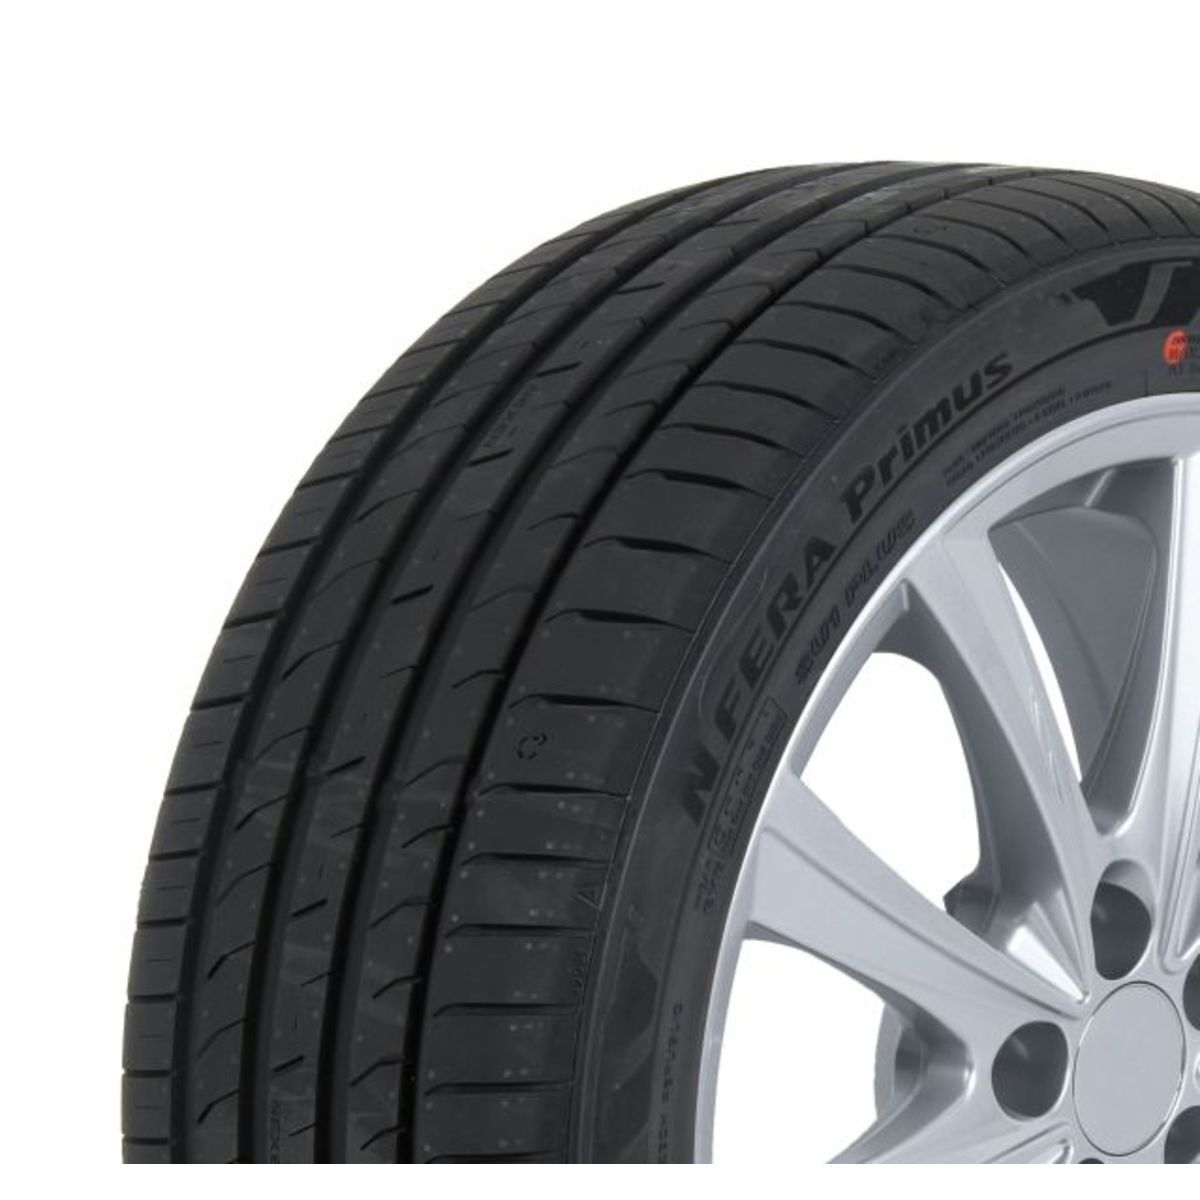 Neumáticos de verano NEXEN NFera Primus 245/45R18 XL 100Y